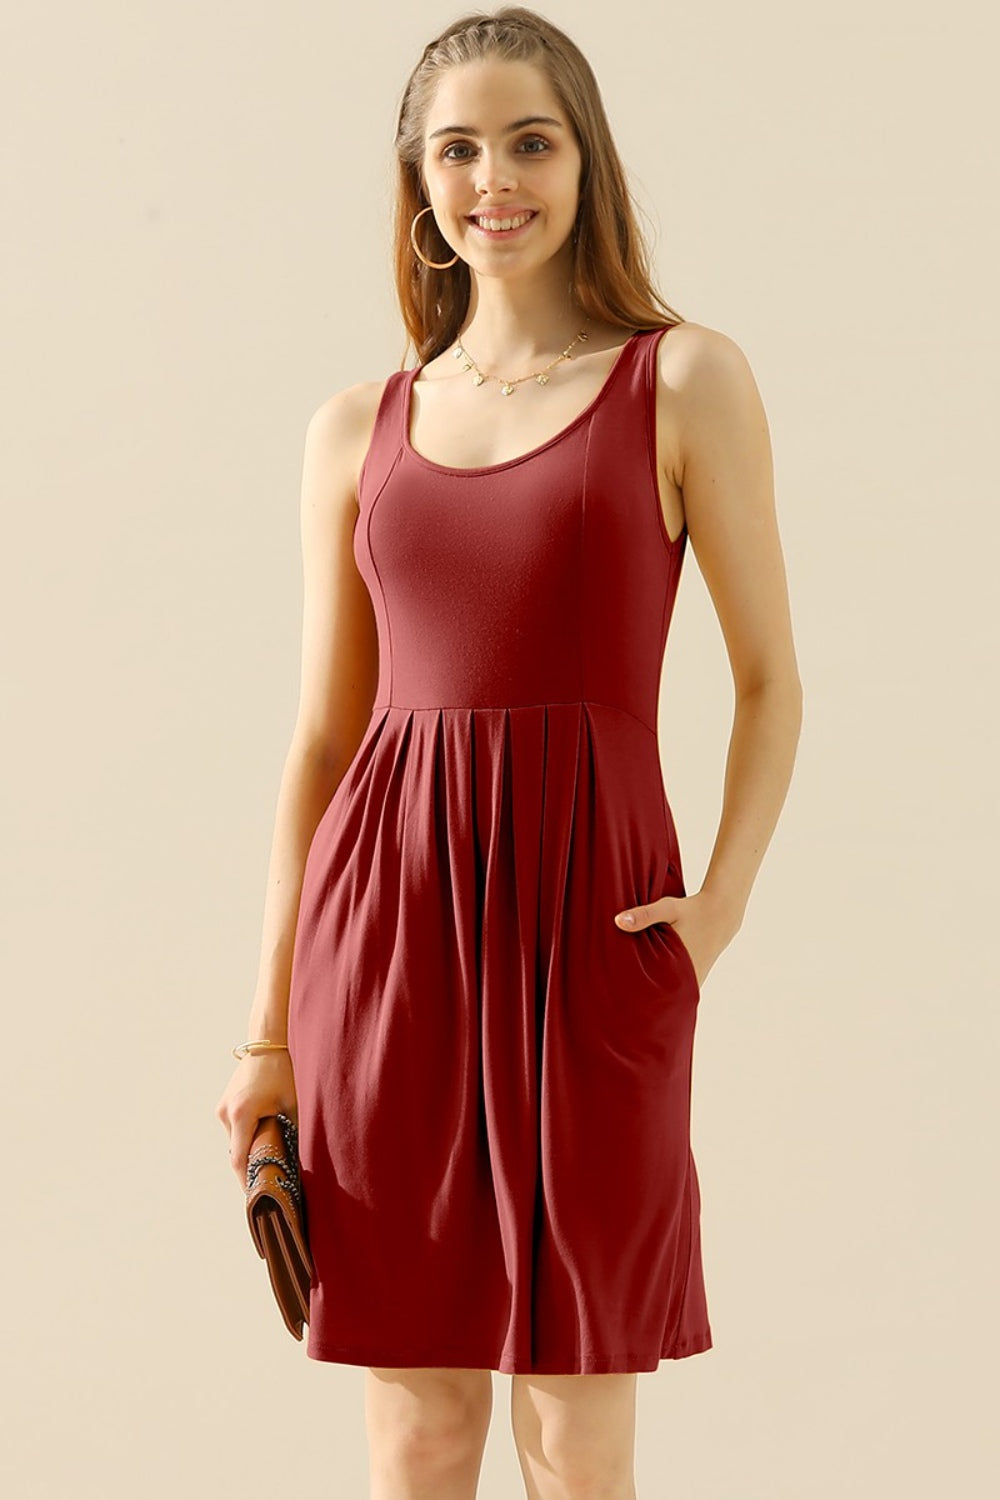 Doublju – Ärmelloses Kleid in voller Größe mit Rundhalsausschnitt, Rüschen und Taschen